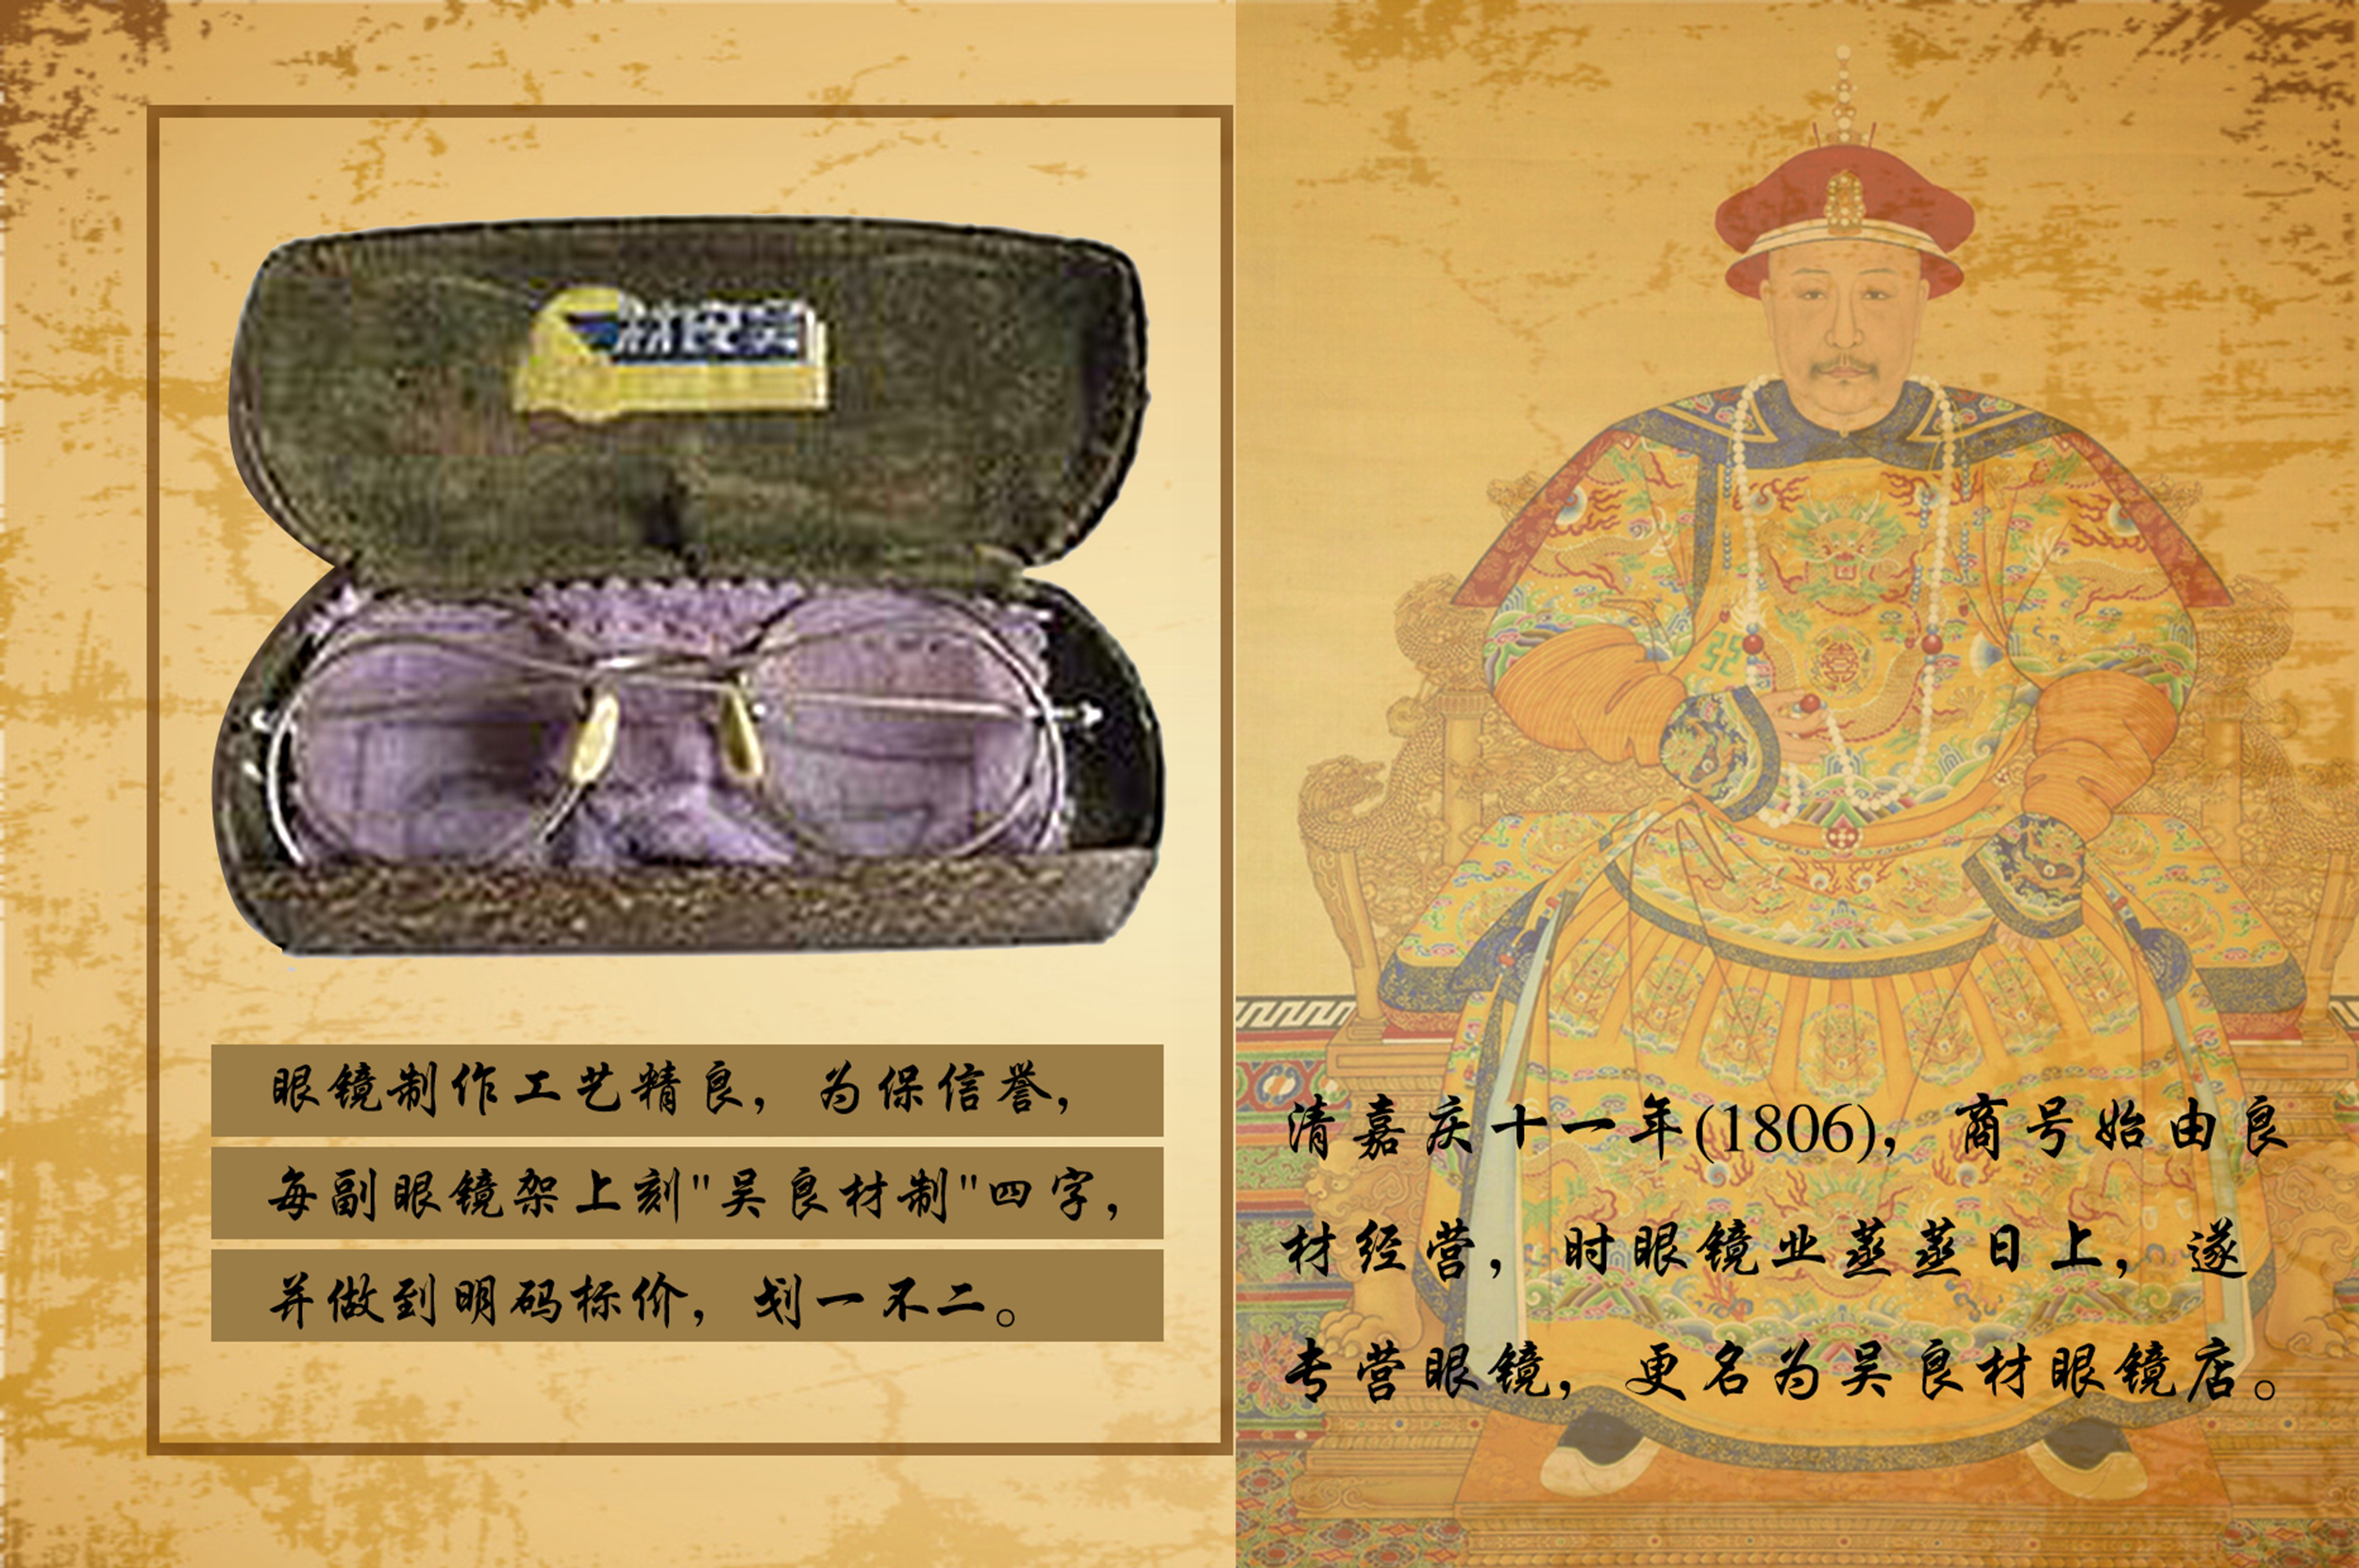 上海吴良材眼镜公司创始于1719年,距今已有近300年历史